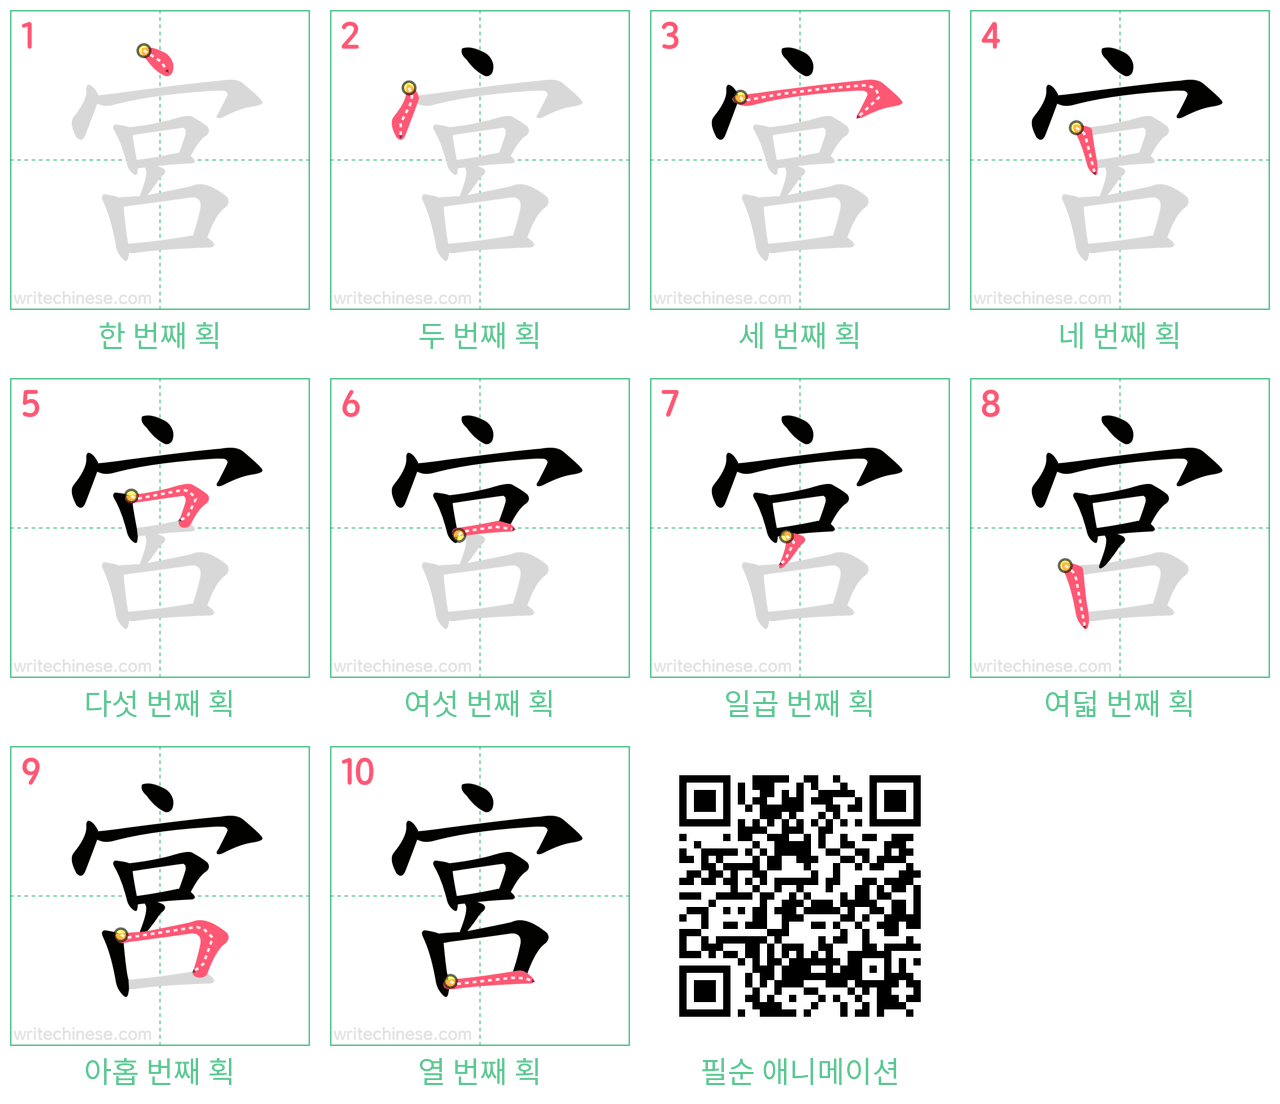 宮 step-by-step stroke order diagrams